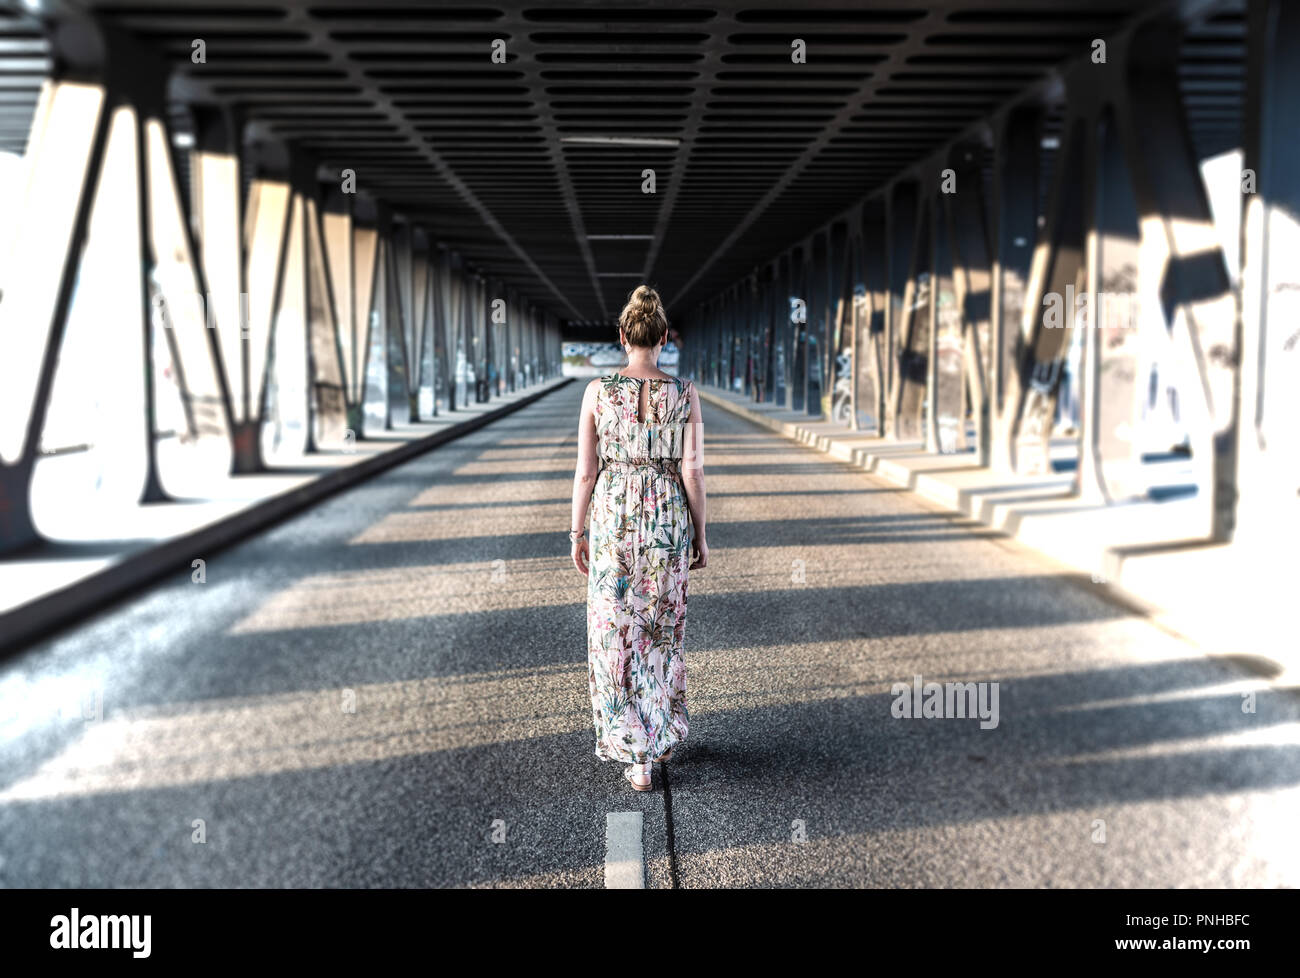 Vue arrière d'une femme en robe longue balade au milieu d'une route sous le pont Banque D'Images